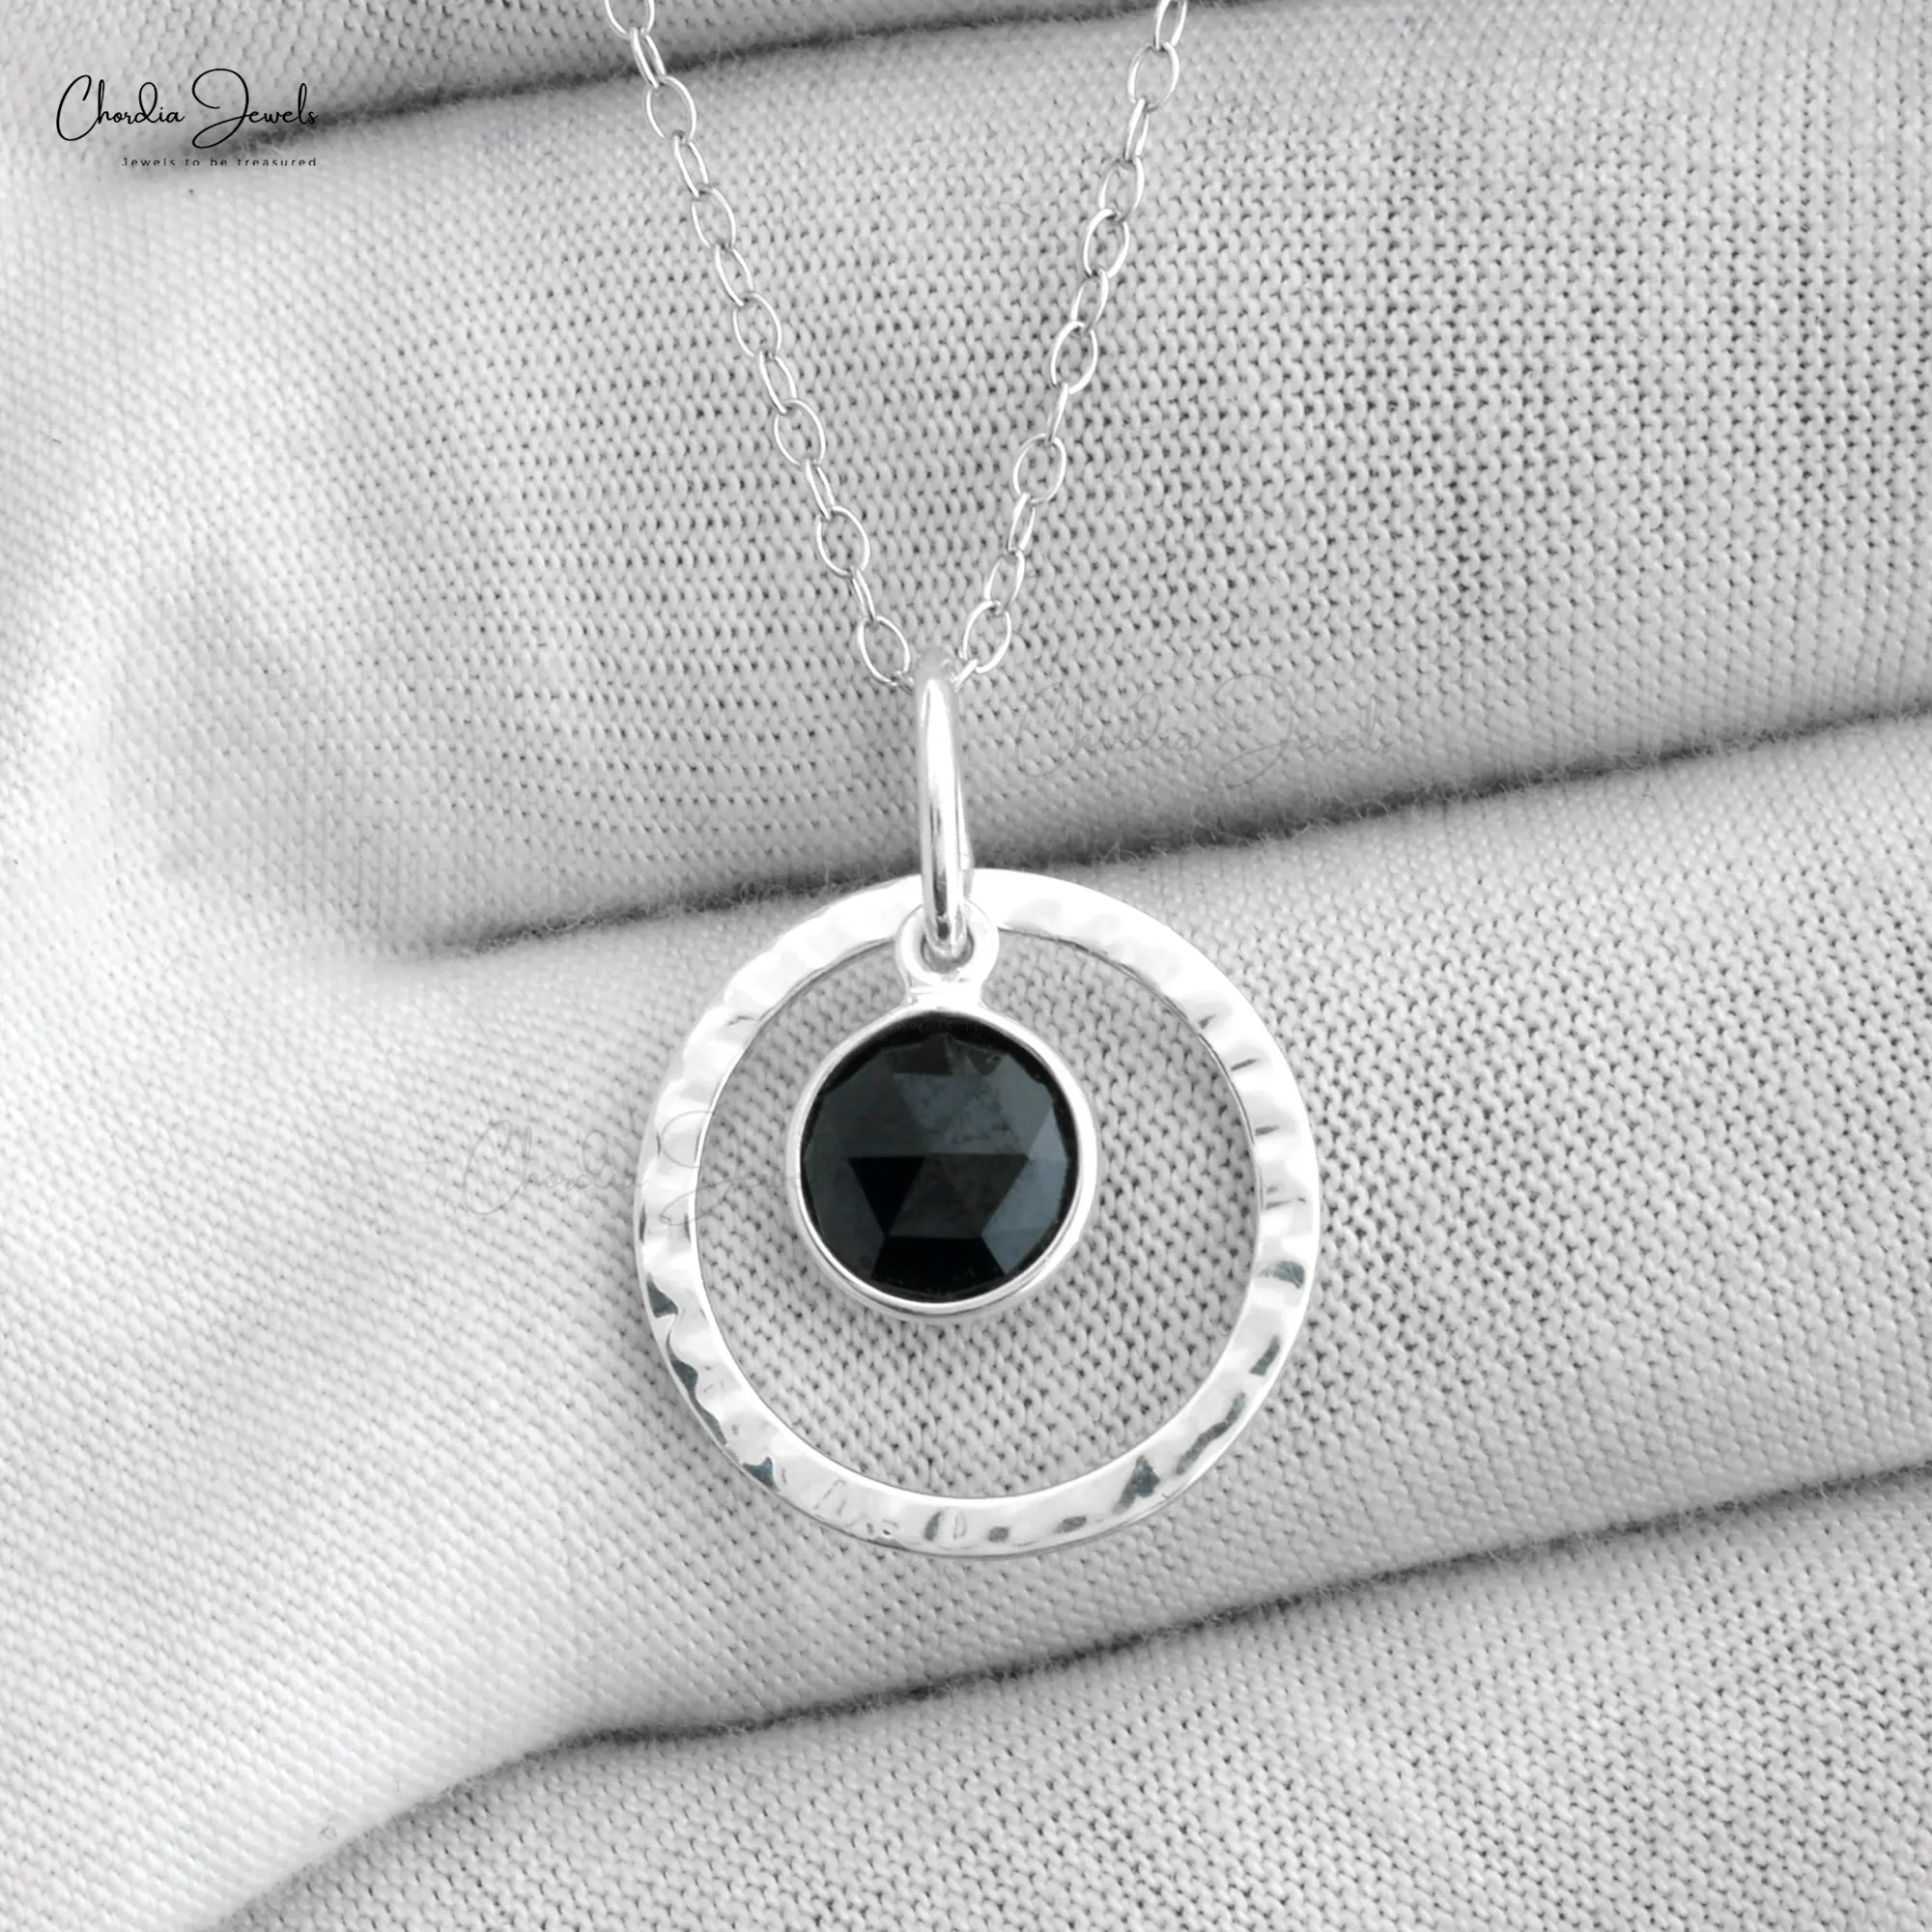 Liontin batu permata Onyx hitam 7MM alami liontin desain buatan tangan kualitas terbaik 925 perak murni manufaktur perhiasan